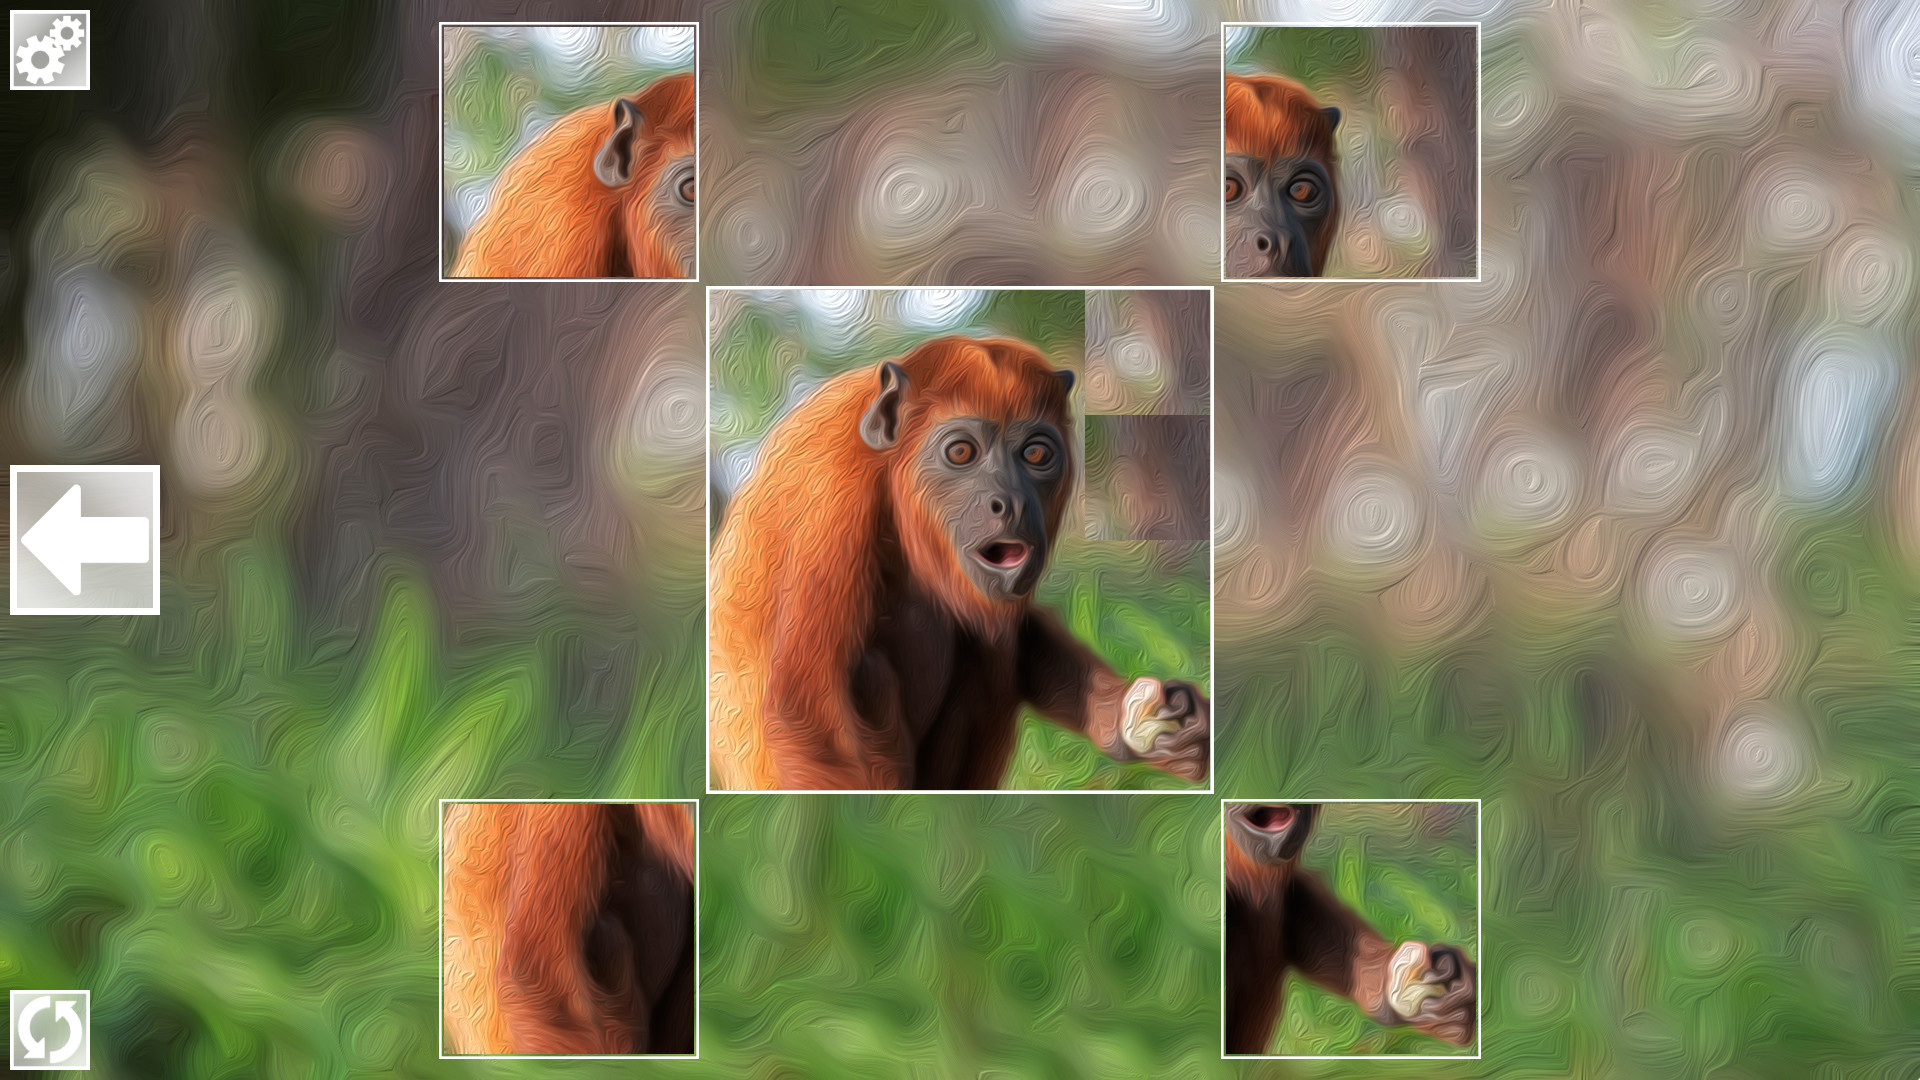 Puzzle Art: Primates Steam CD Key, 0.44 usd